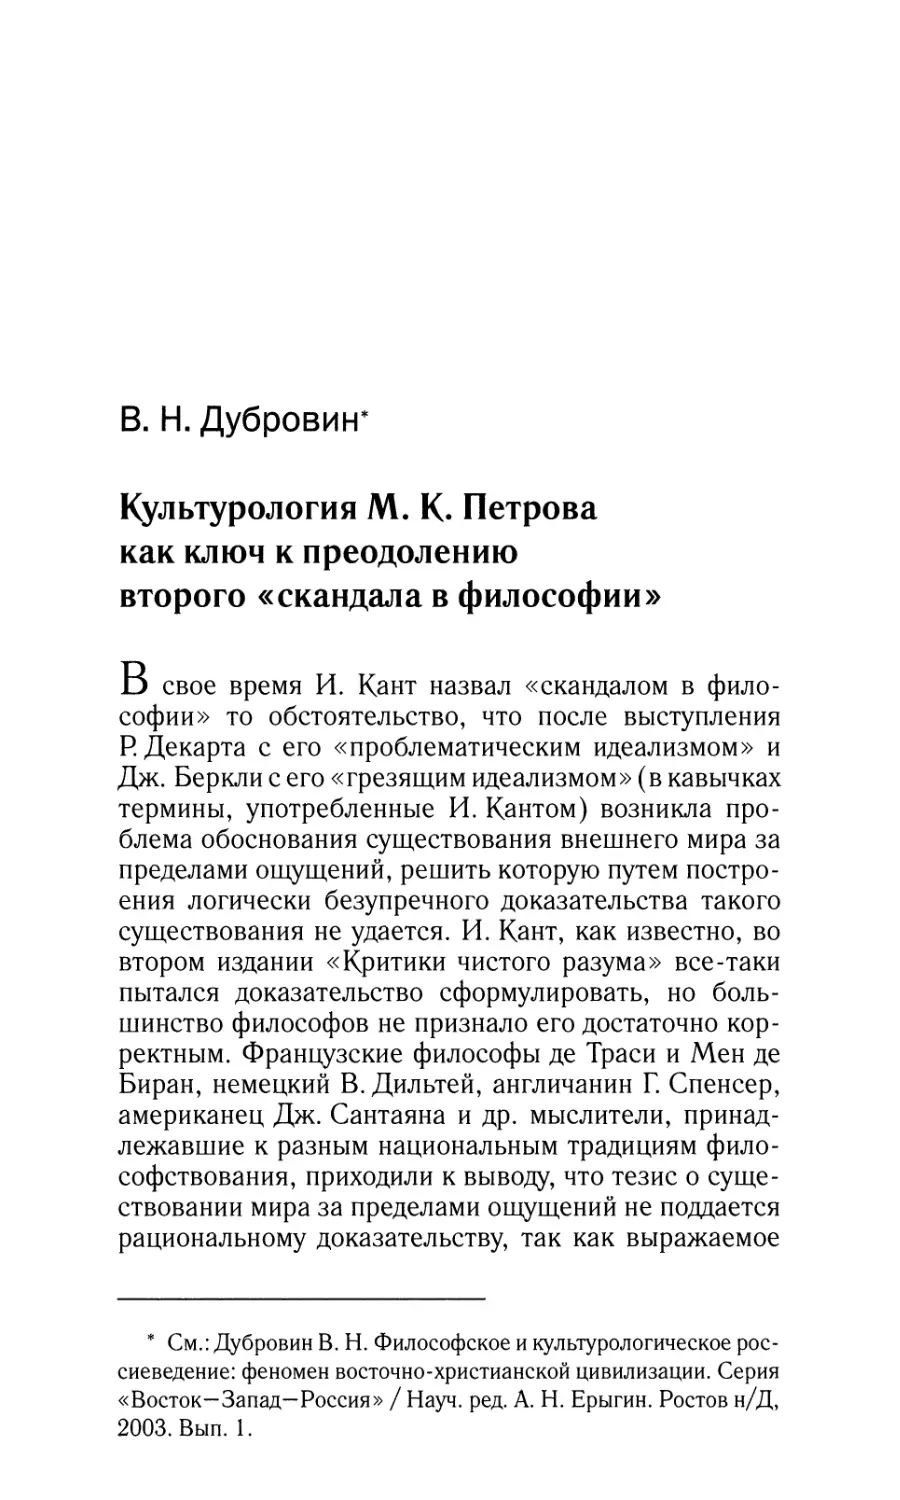 Культурология М.К.Петрова как ключ к преодолению второго «скандала в философии»